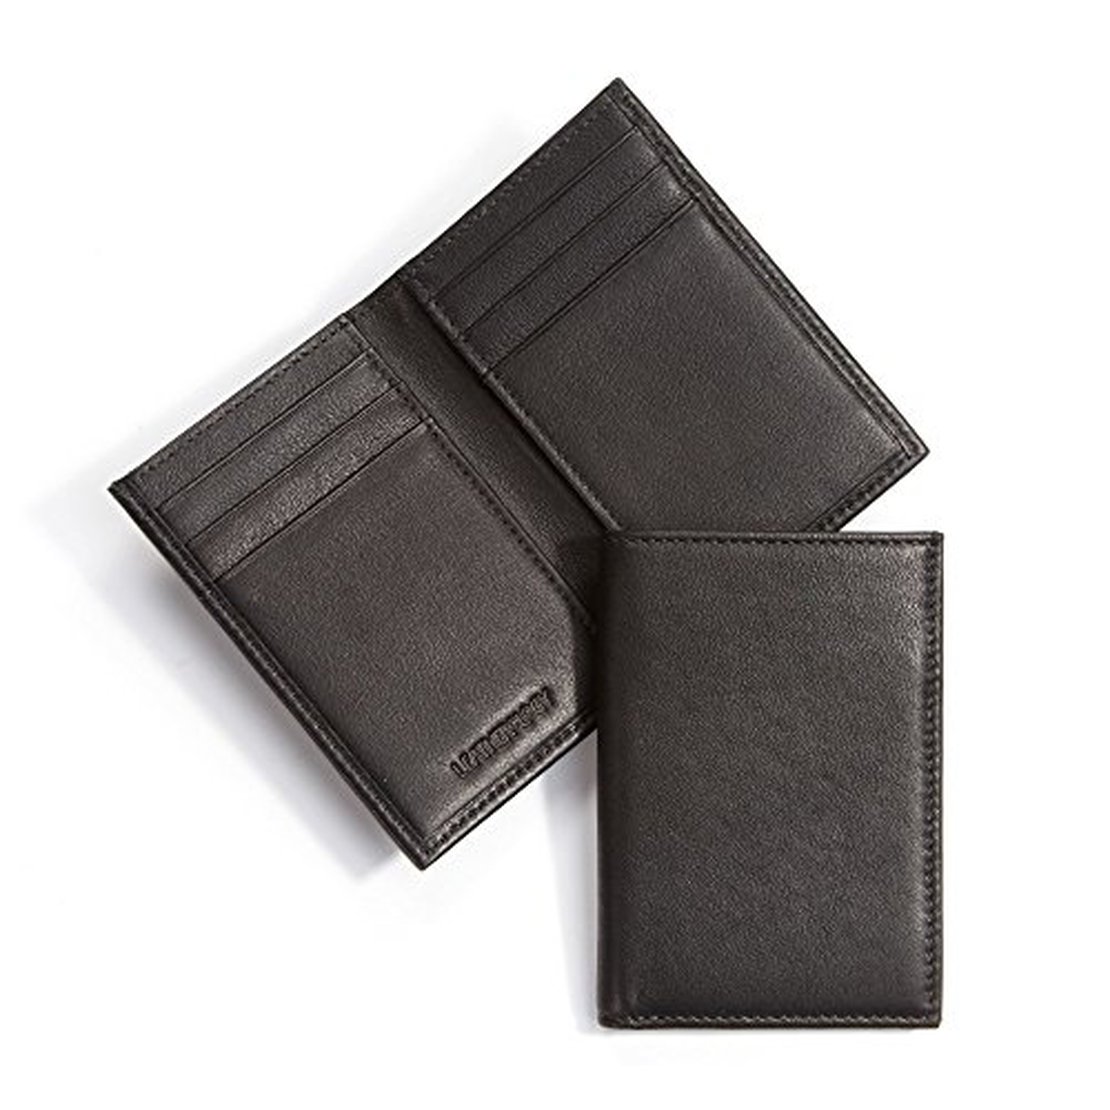 5 Best Vertical Wallet Designs | LeatherWallets.org